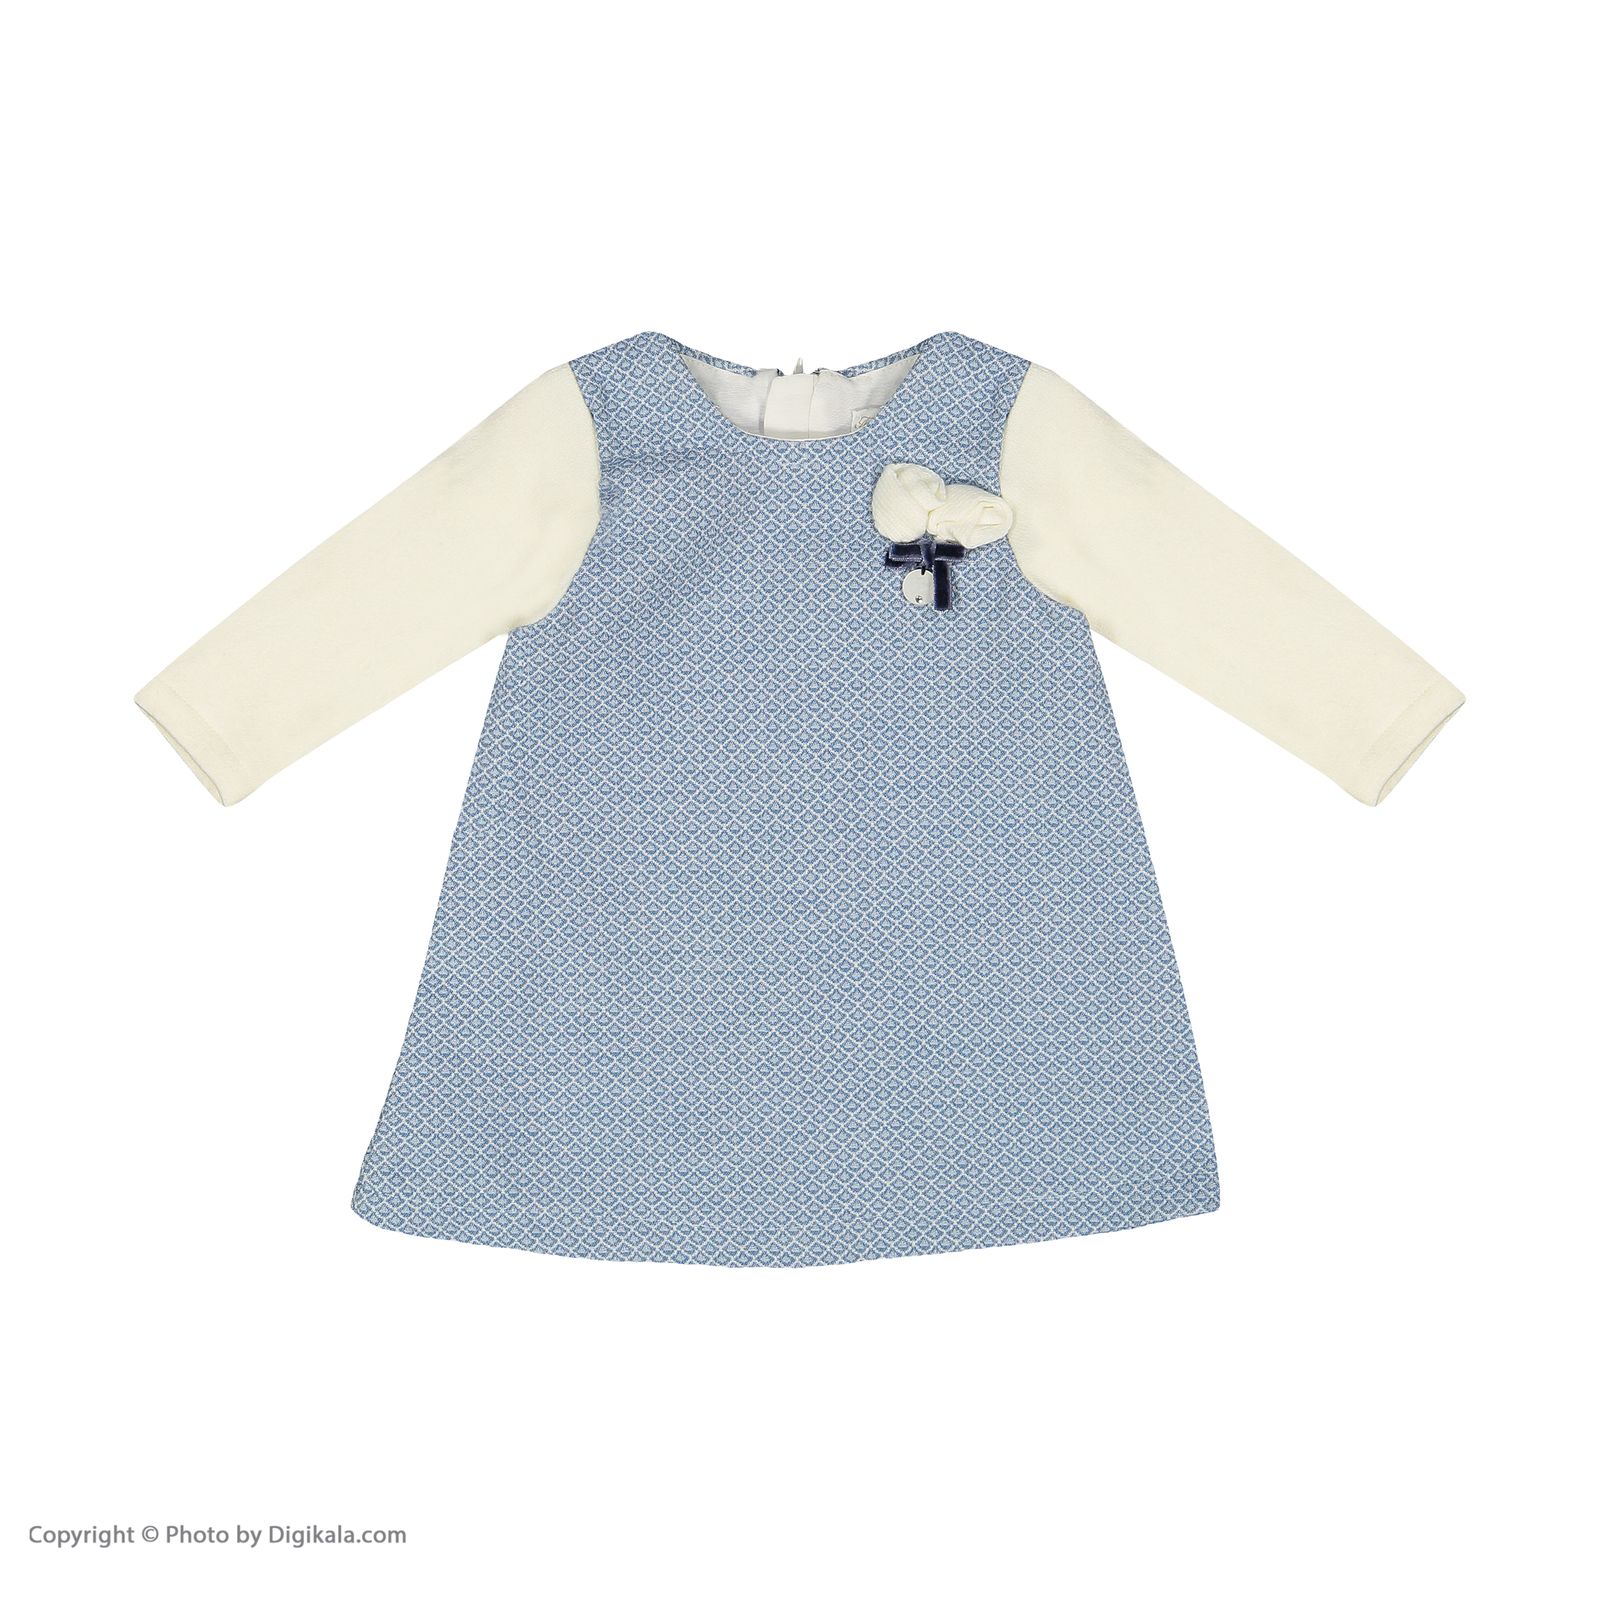 ست پیراهن و جوراب شلواری نوزادی دخترانه مونا رزا مدل 2141122-50 -  - 3